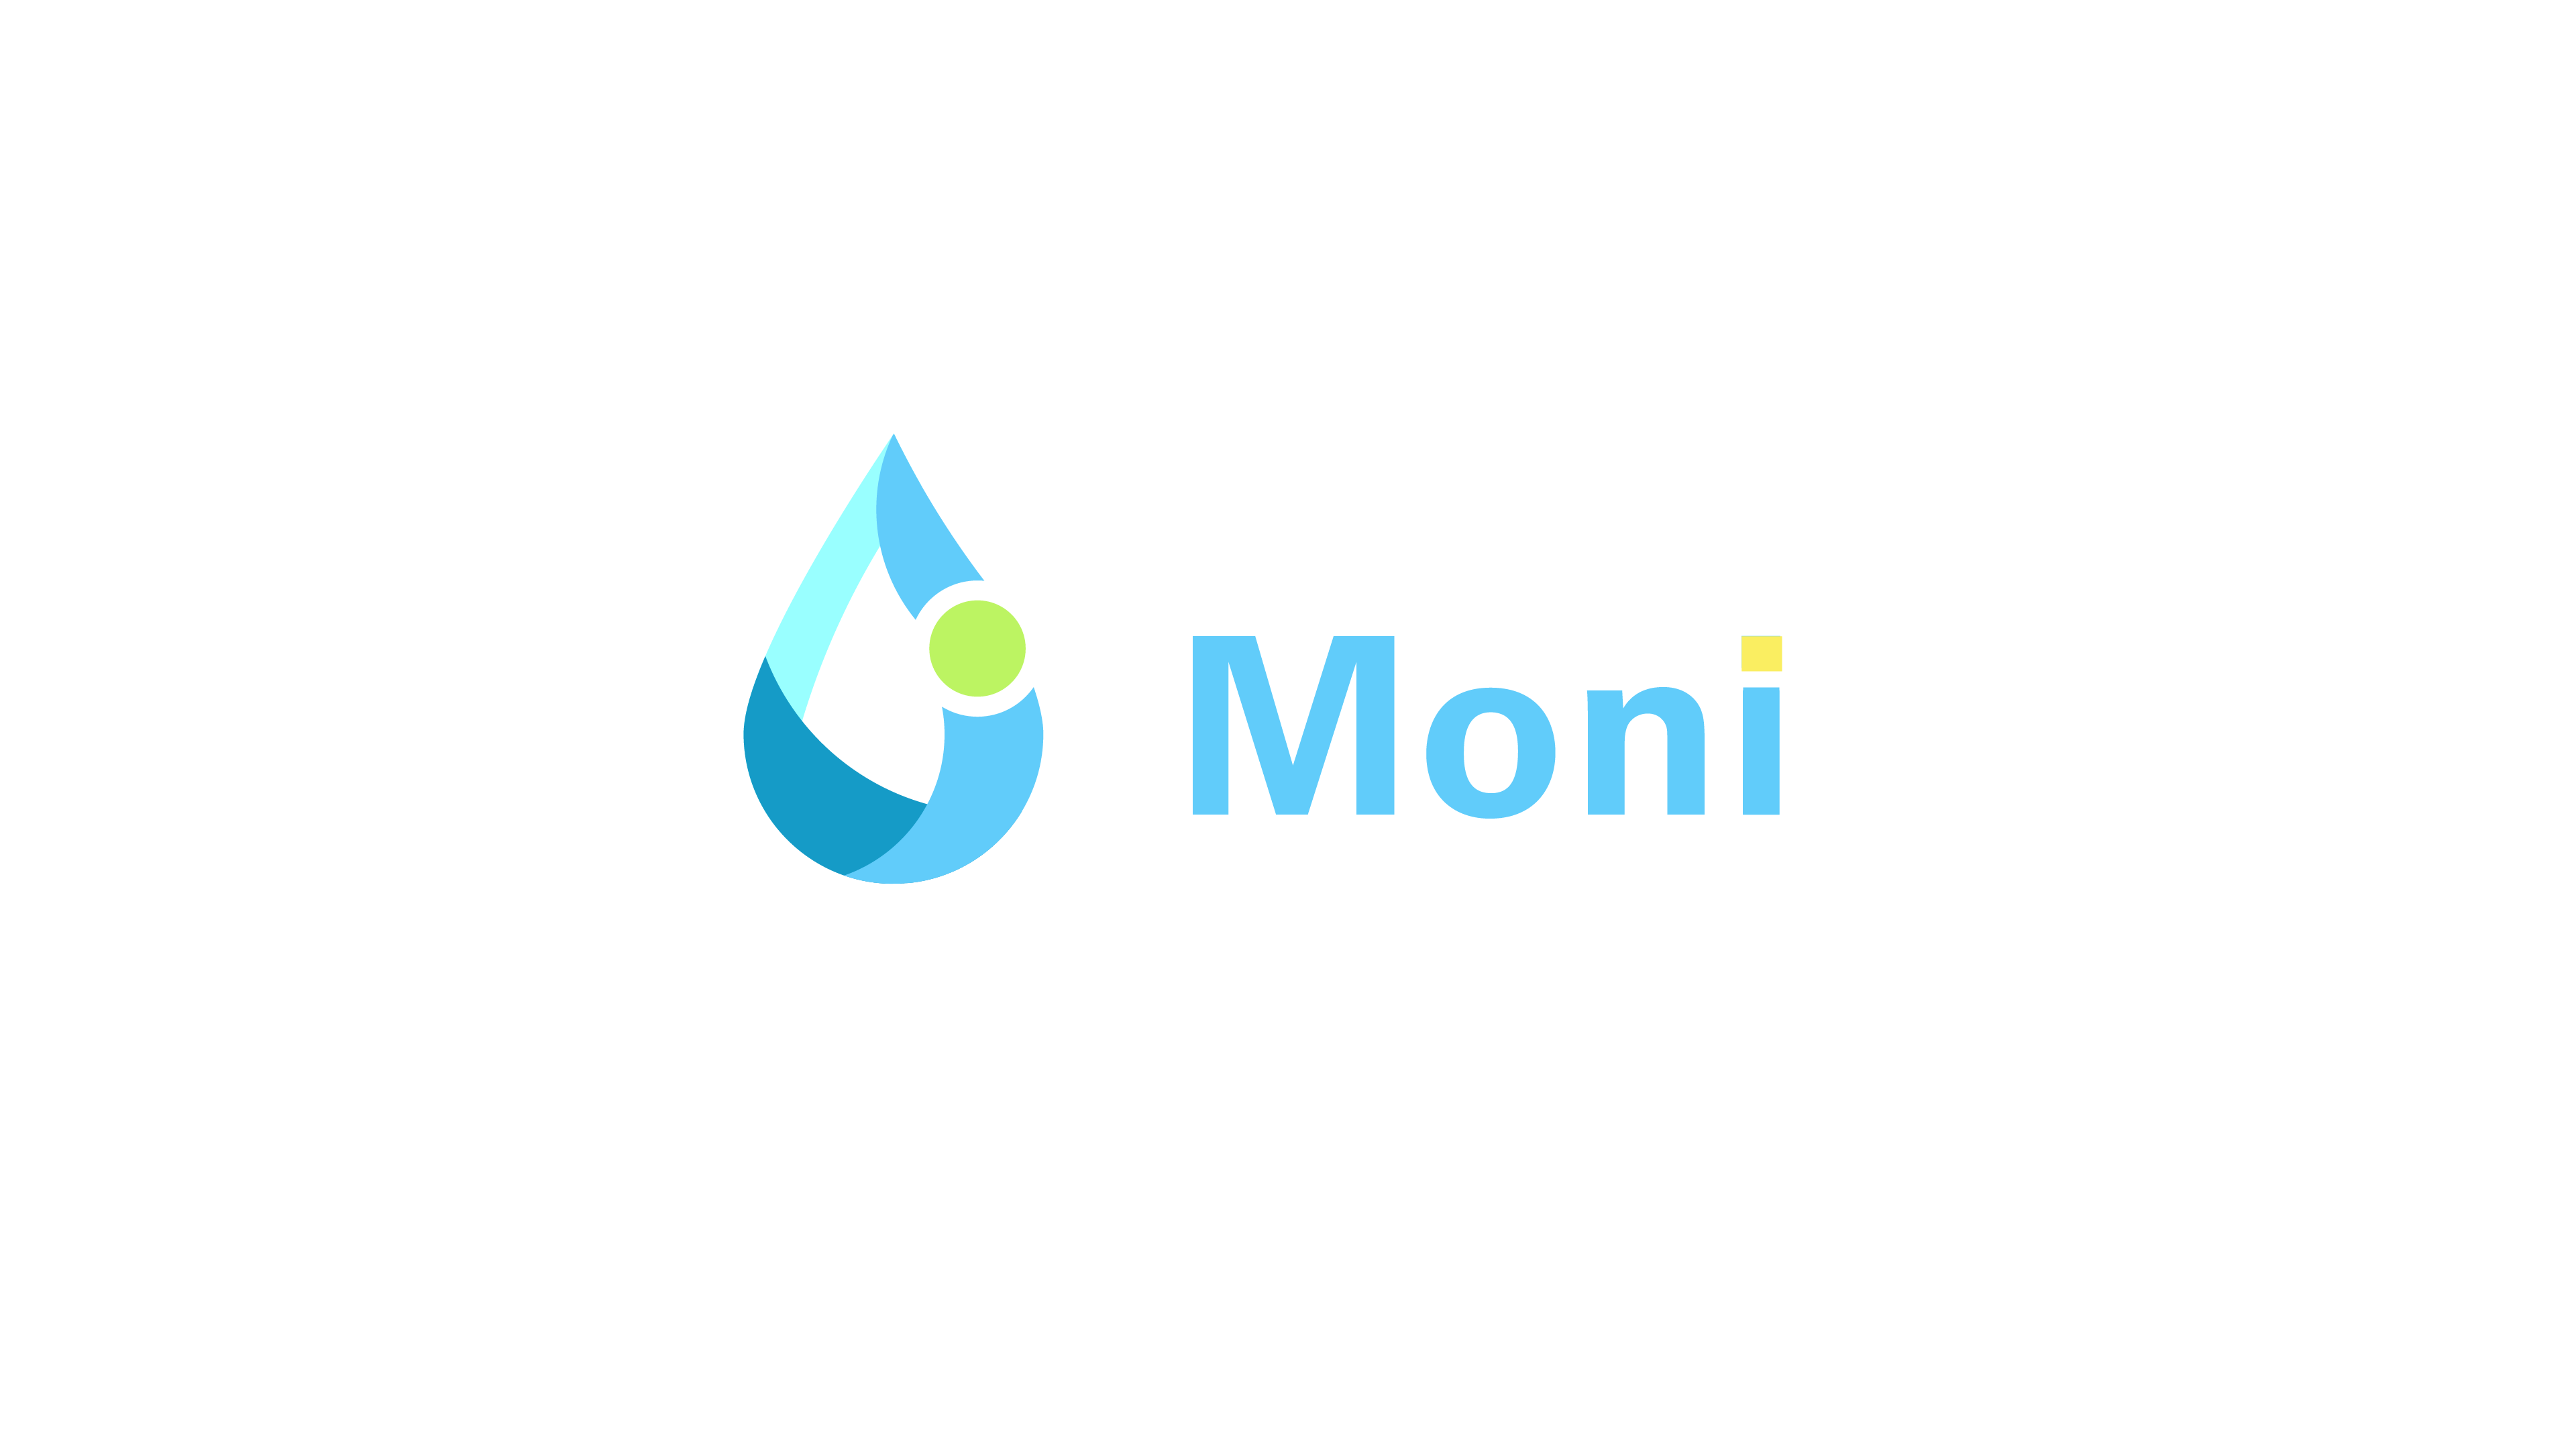 Moni Logo - Moni